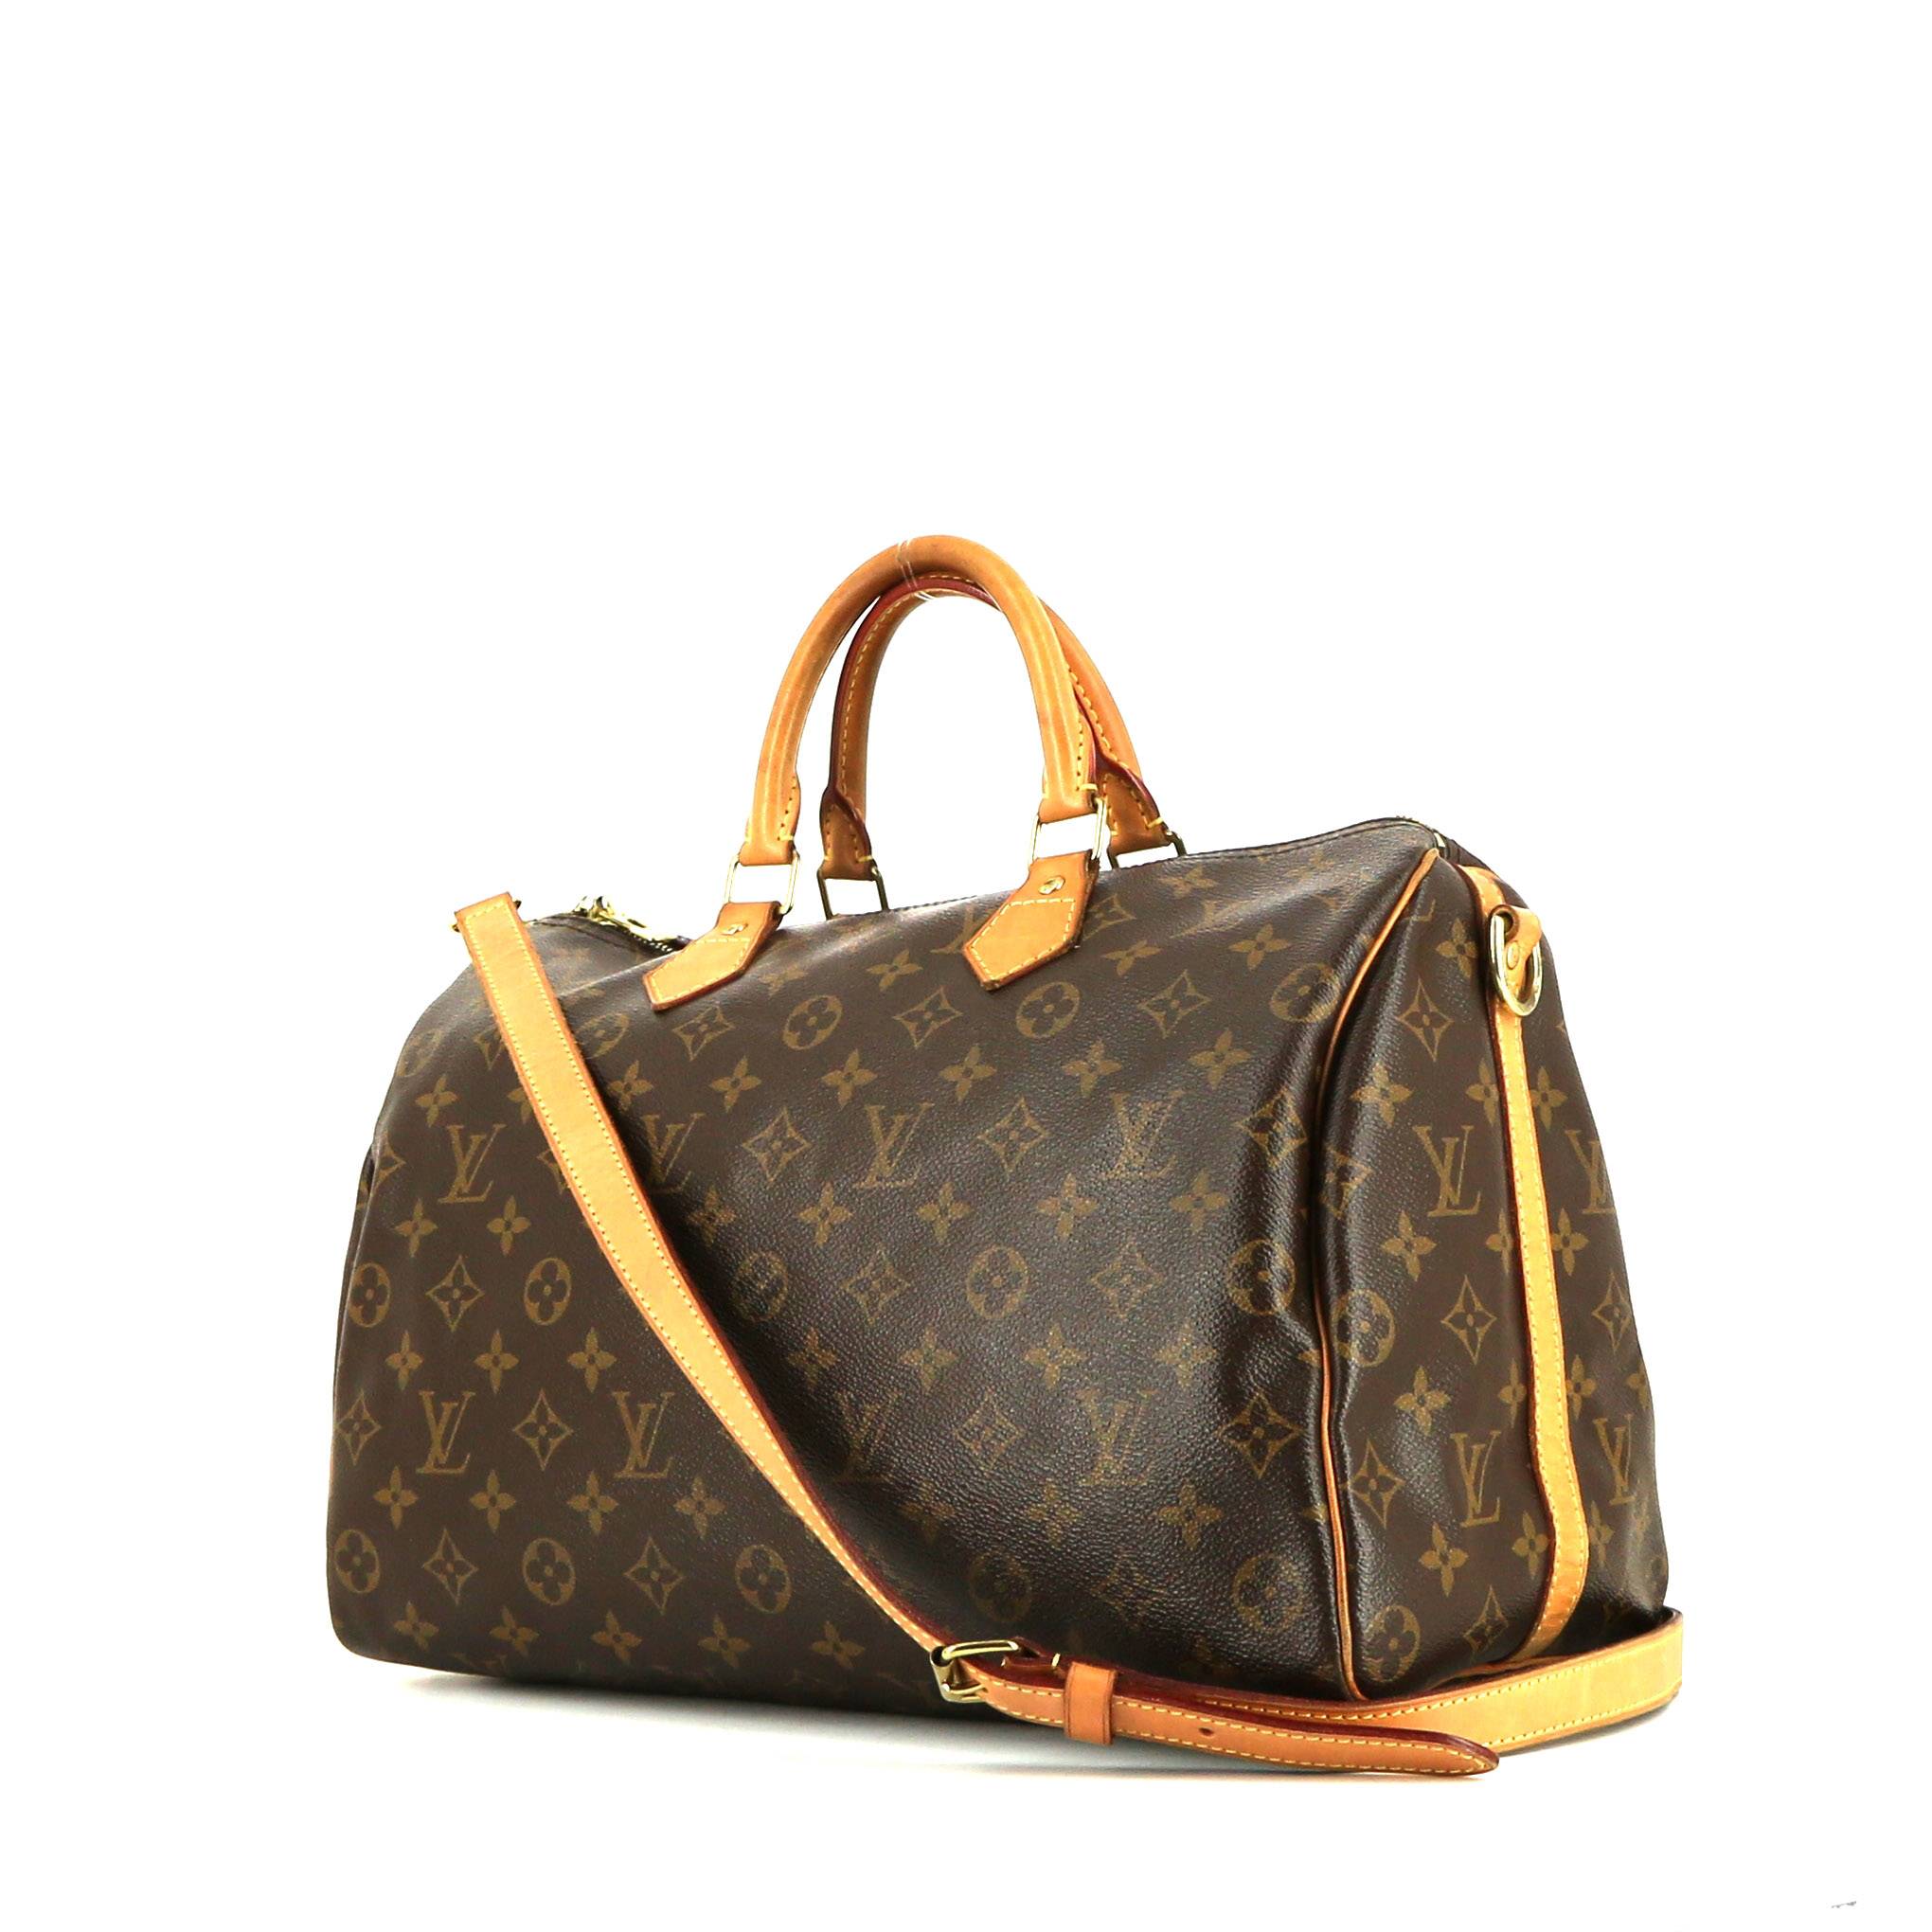 Bolso de mano Louis Vuitton Speedy 35 en lona Monogram marrón y cuero natural - 00pp